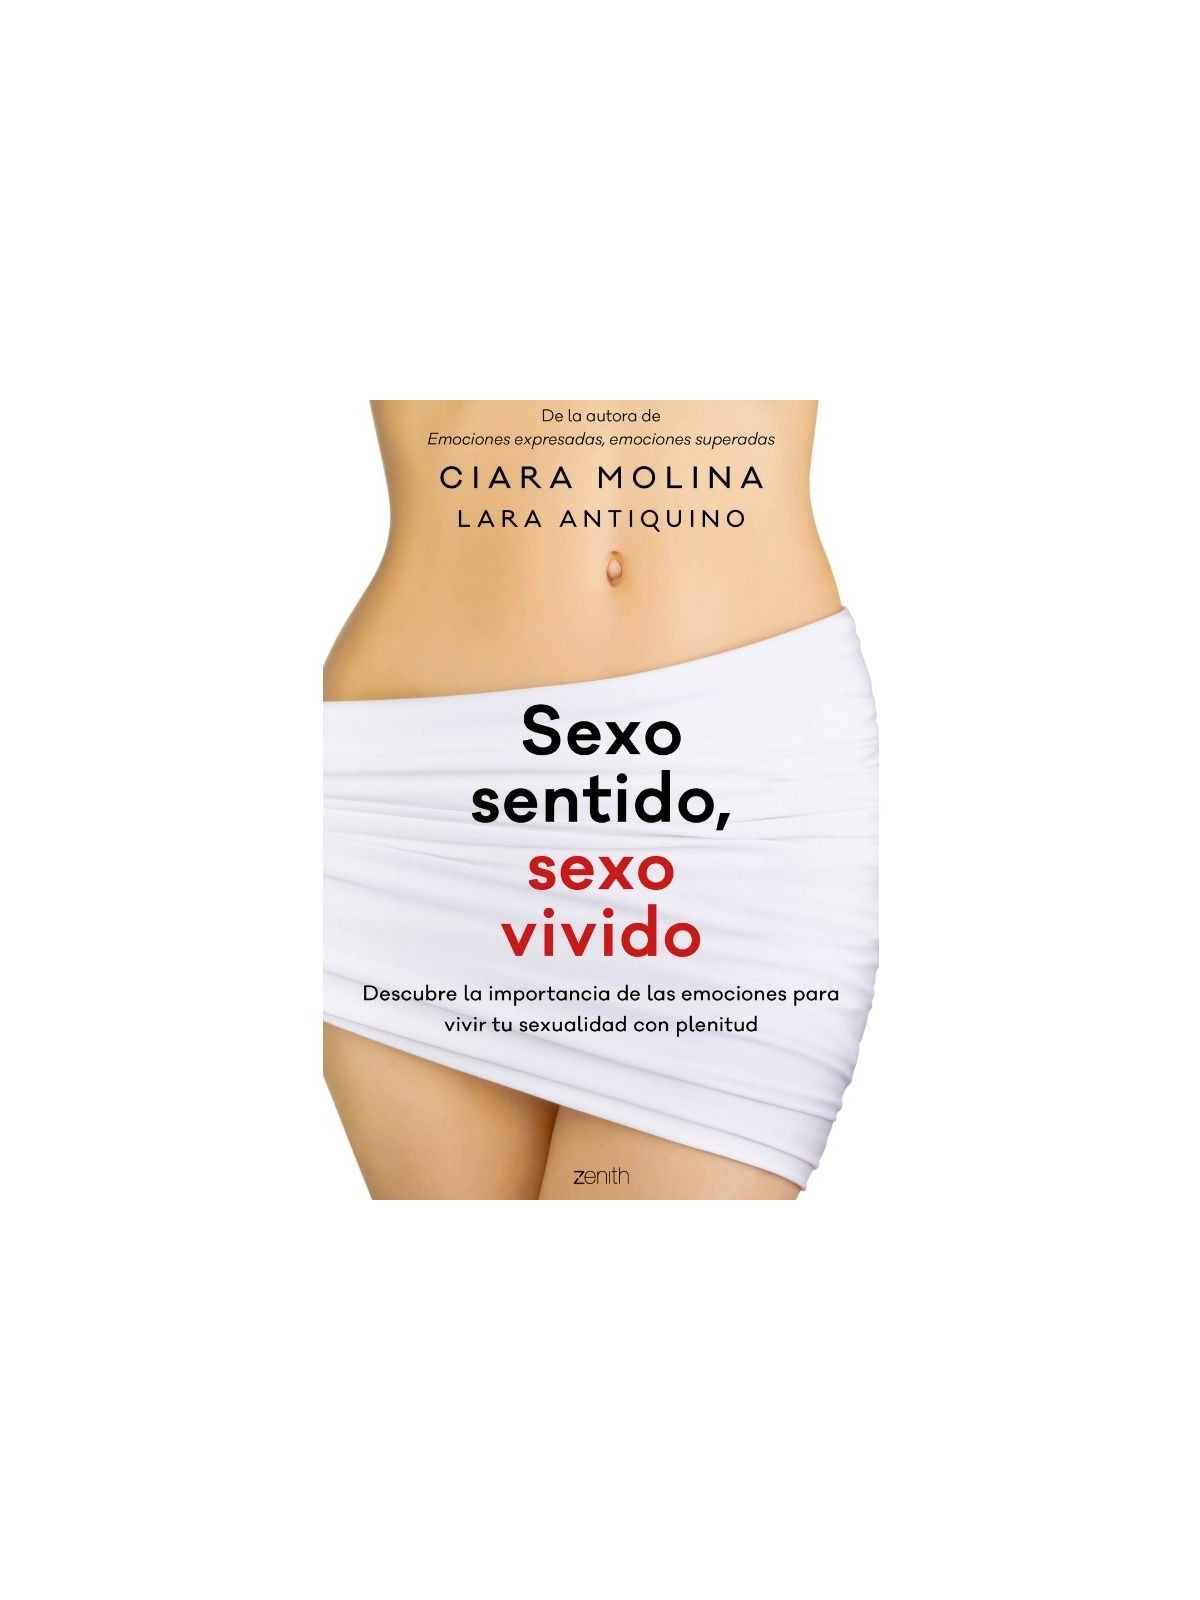 Sexo Sentido Sexo Vivido - Comprar Libro o DVD erótico Grupo Planeta - Libros & películas eróticas (1)